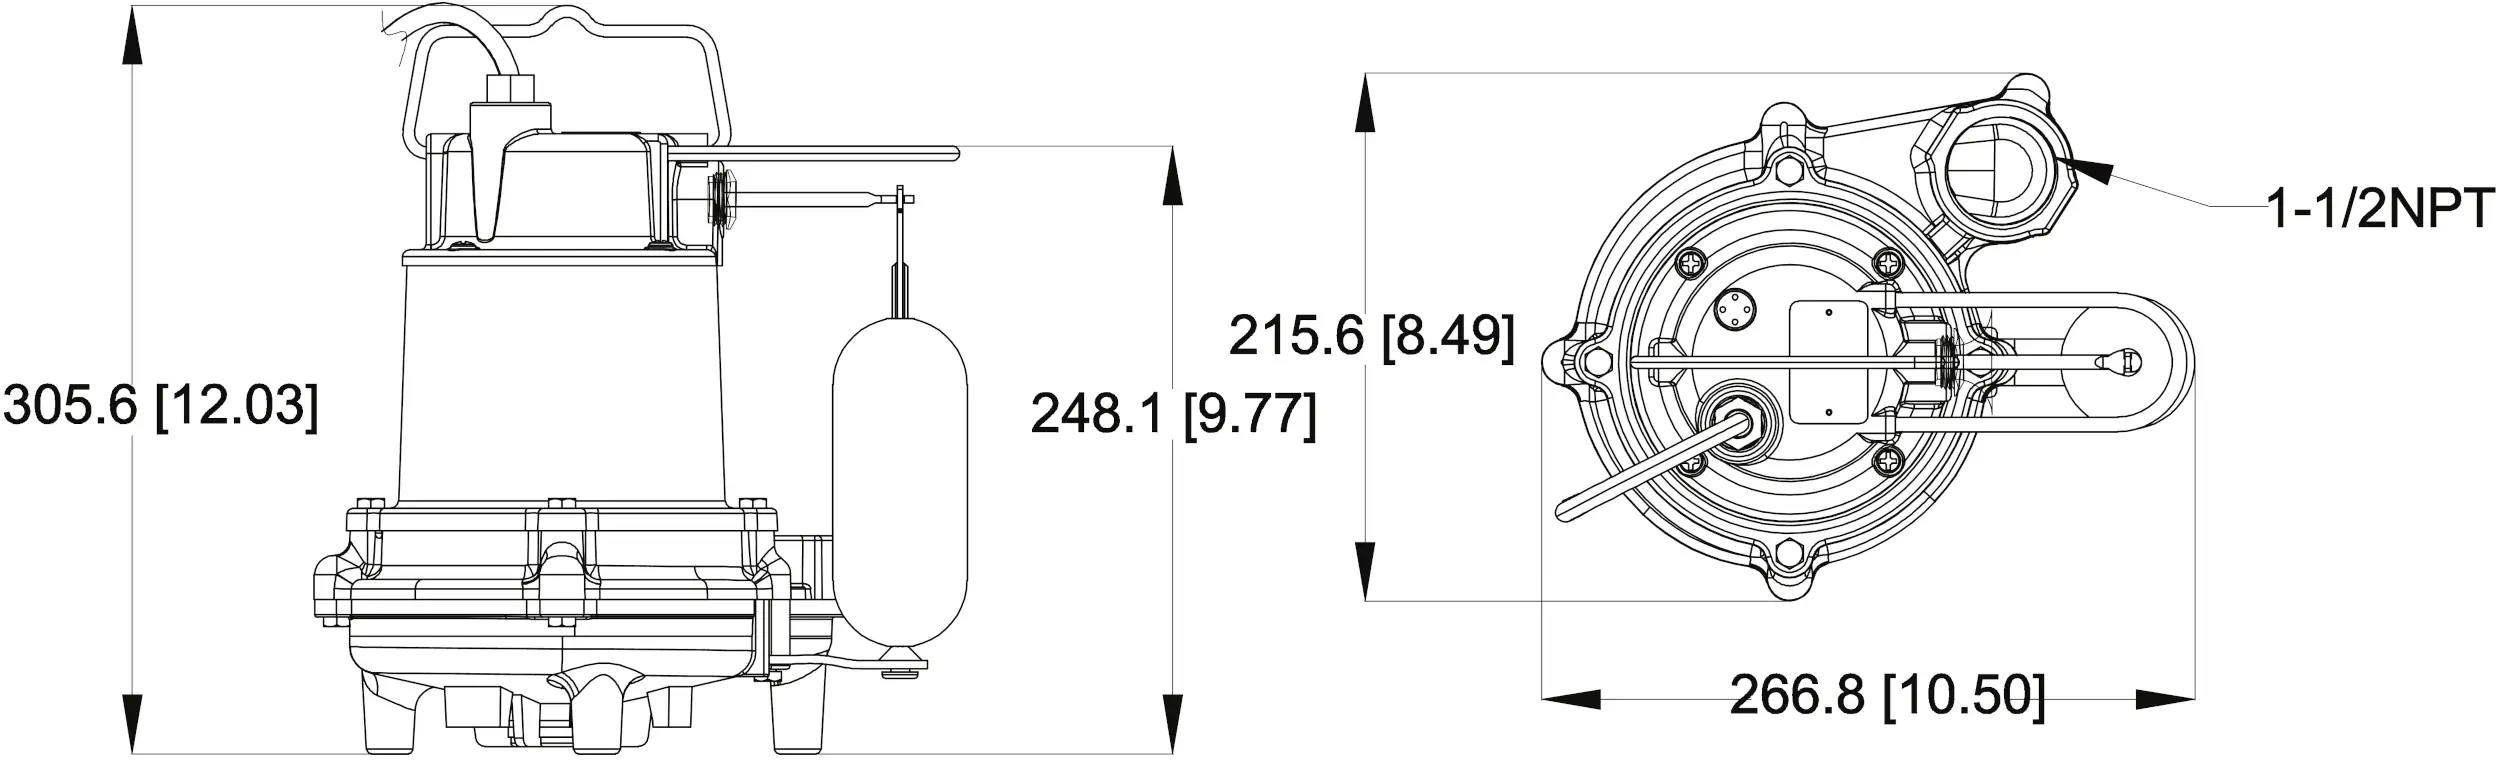 SPV50 Pump Dimensions